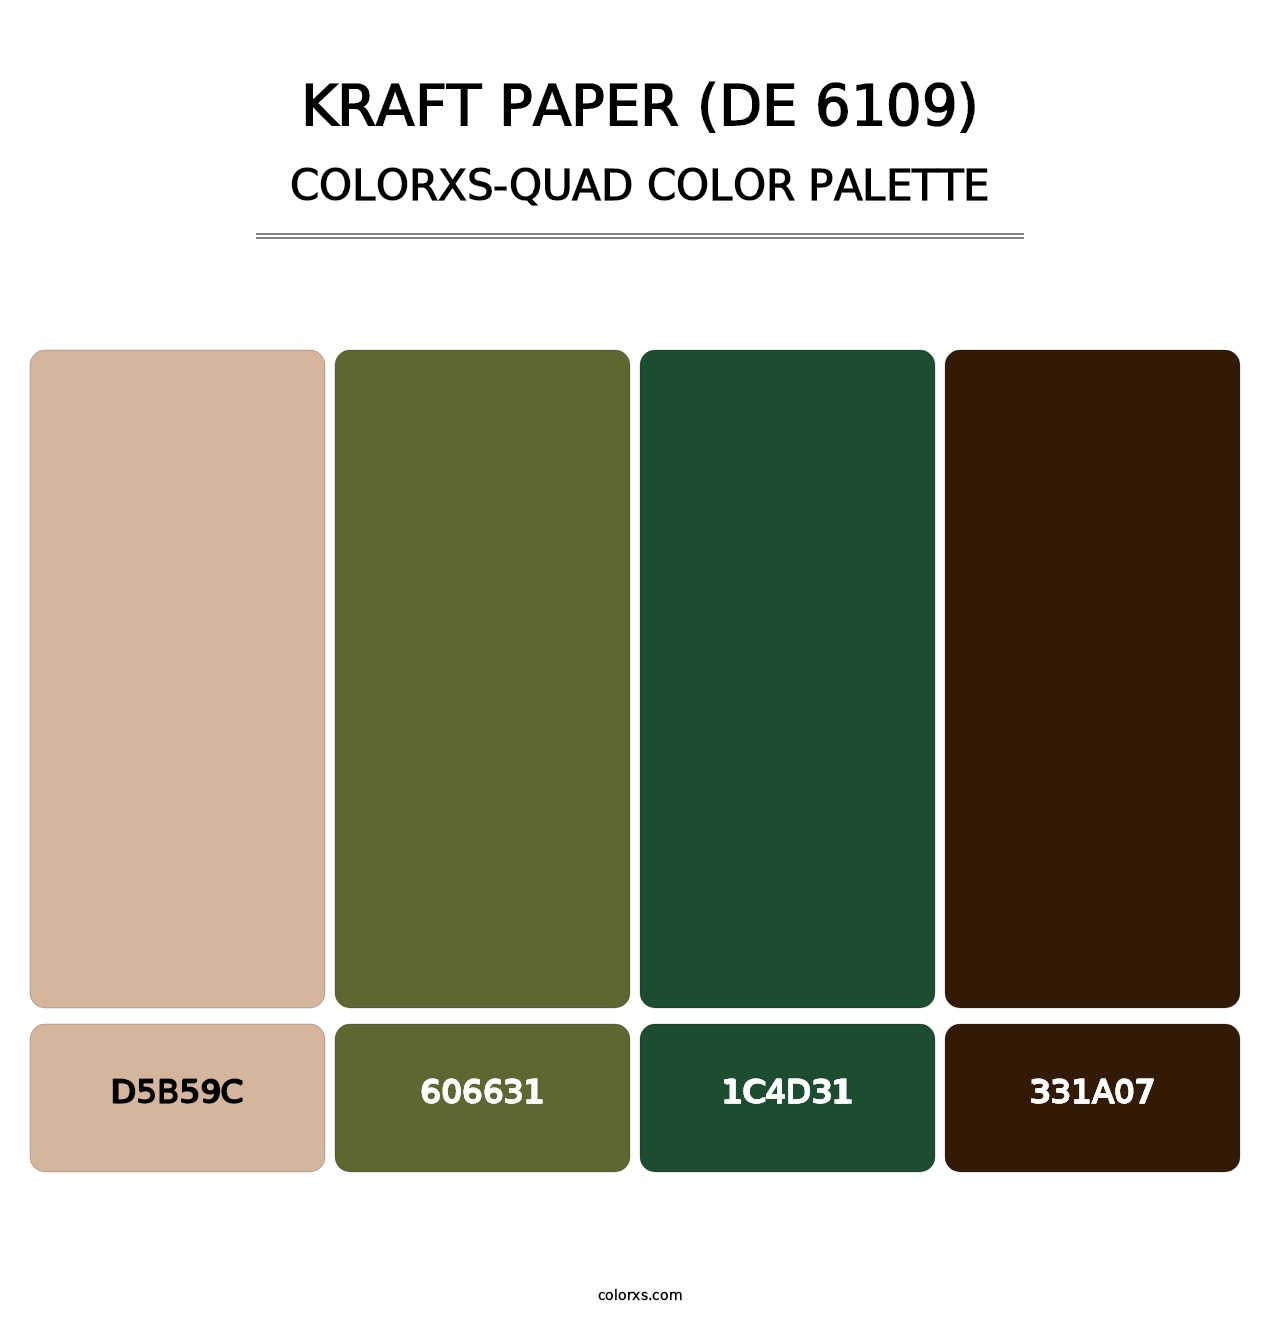 Kraft Paper (DE 6109) - Colorxs Quad Palette